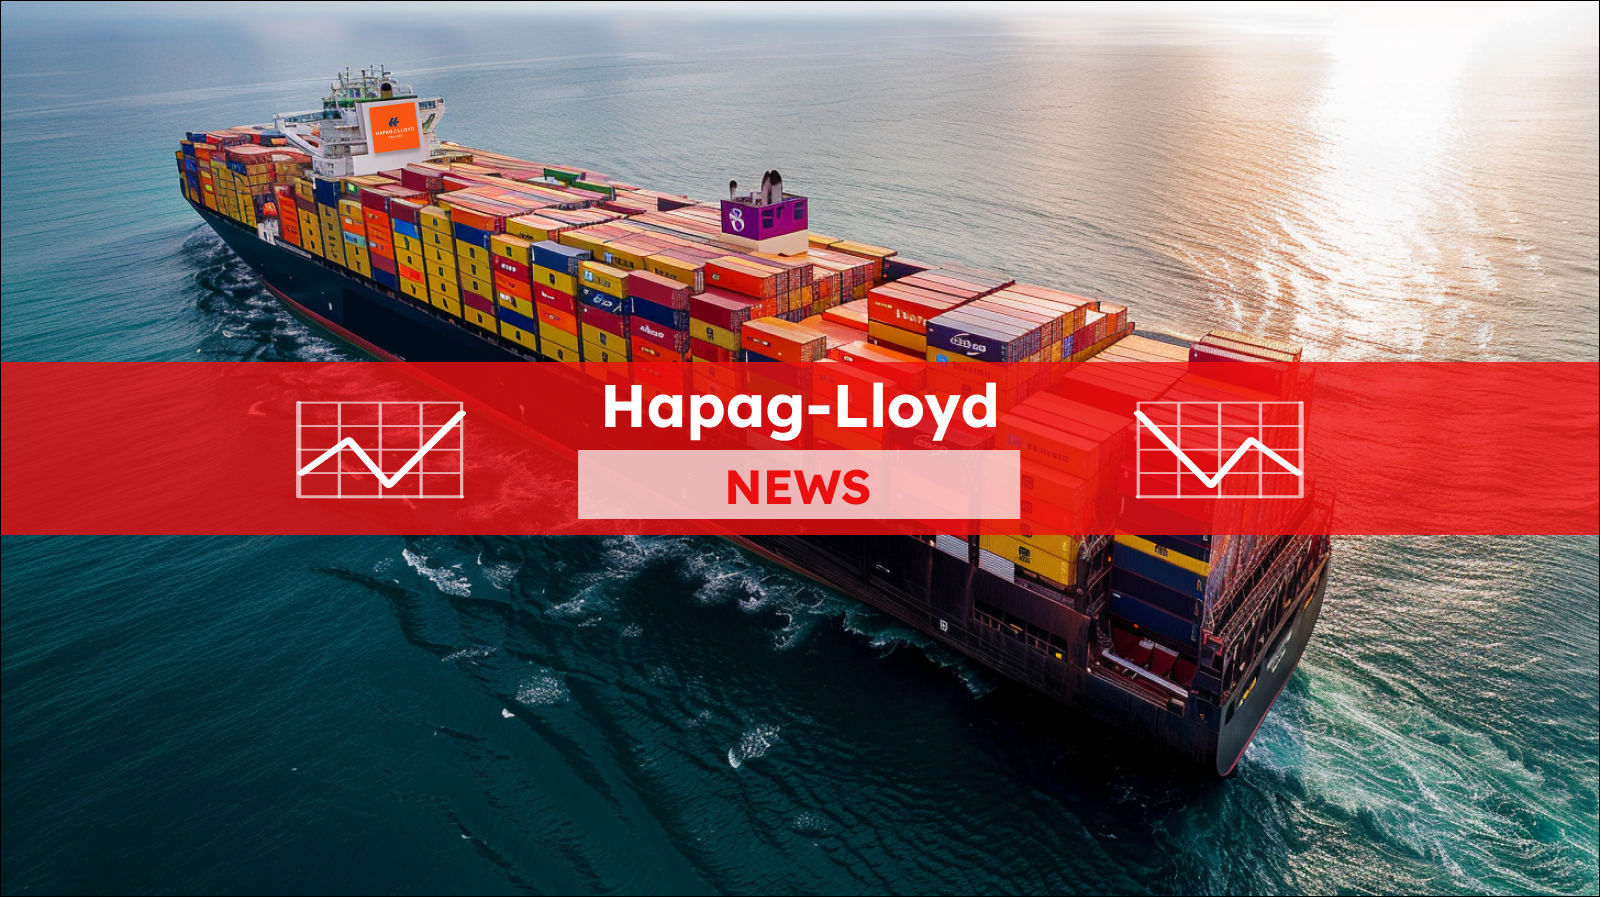 ein großes Hapag-Lloyd-Frachtschiff auf See, schwer beladen mit bunten Schiffscontainern, mit einem roten NEWS-Banner